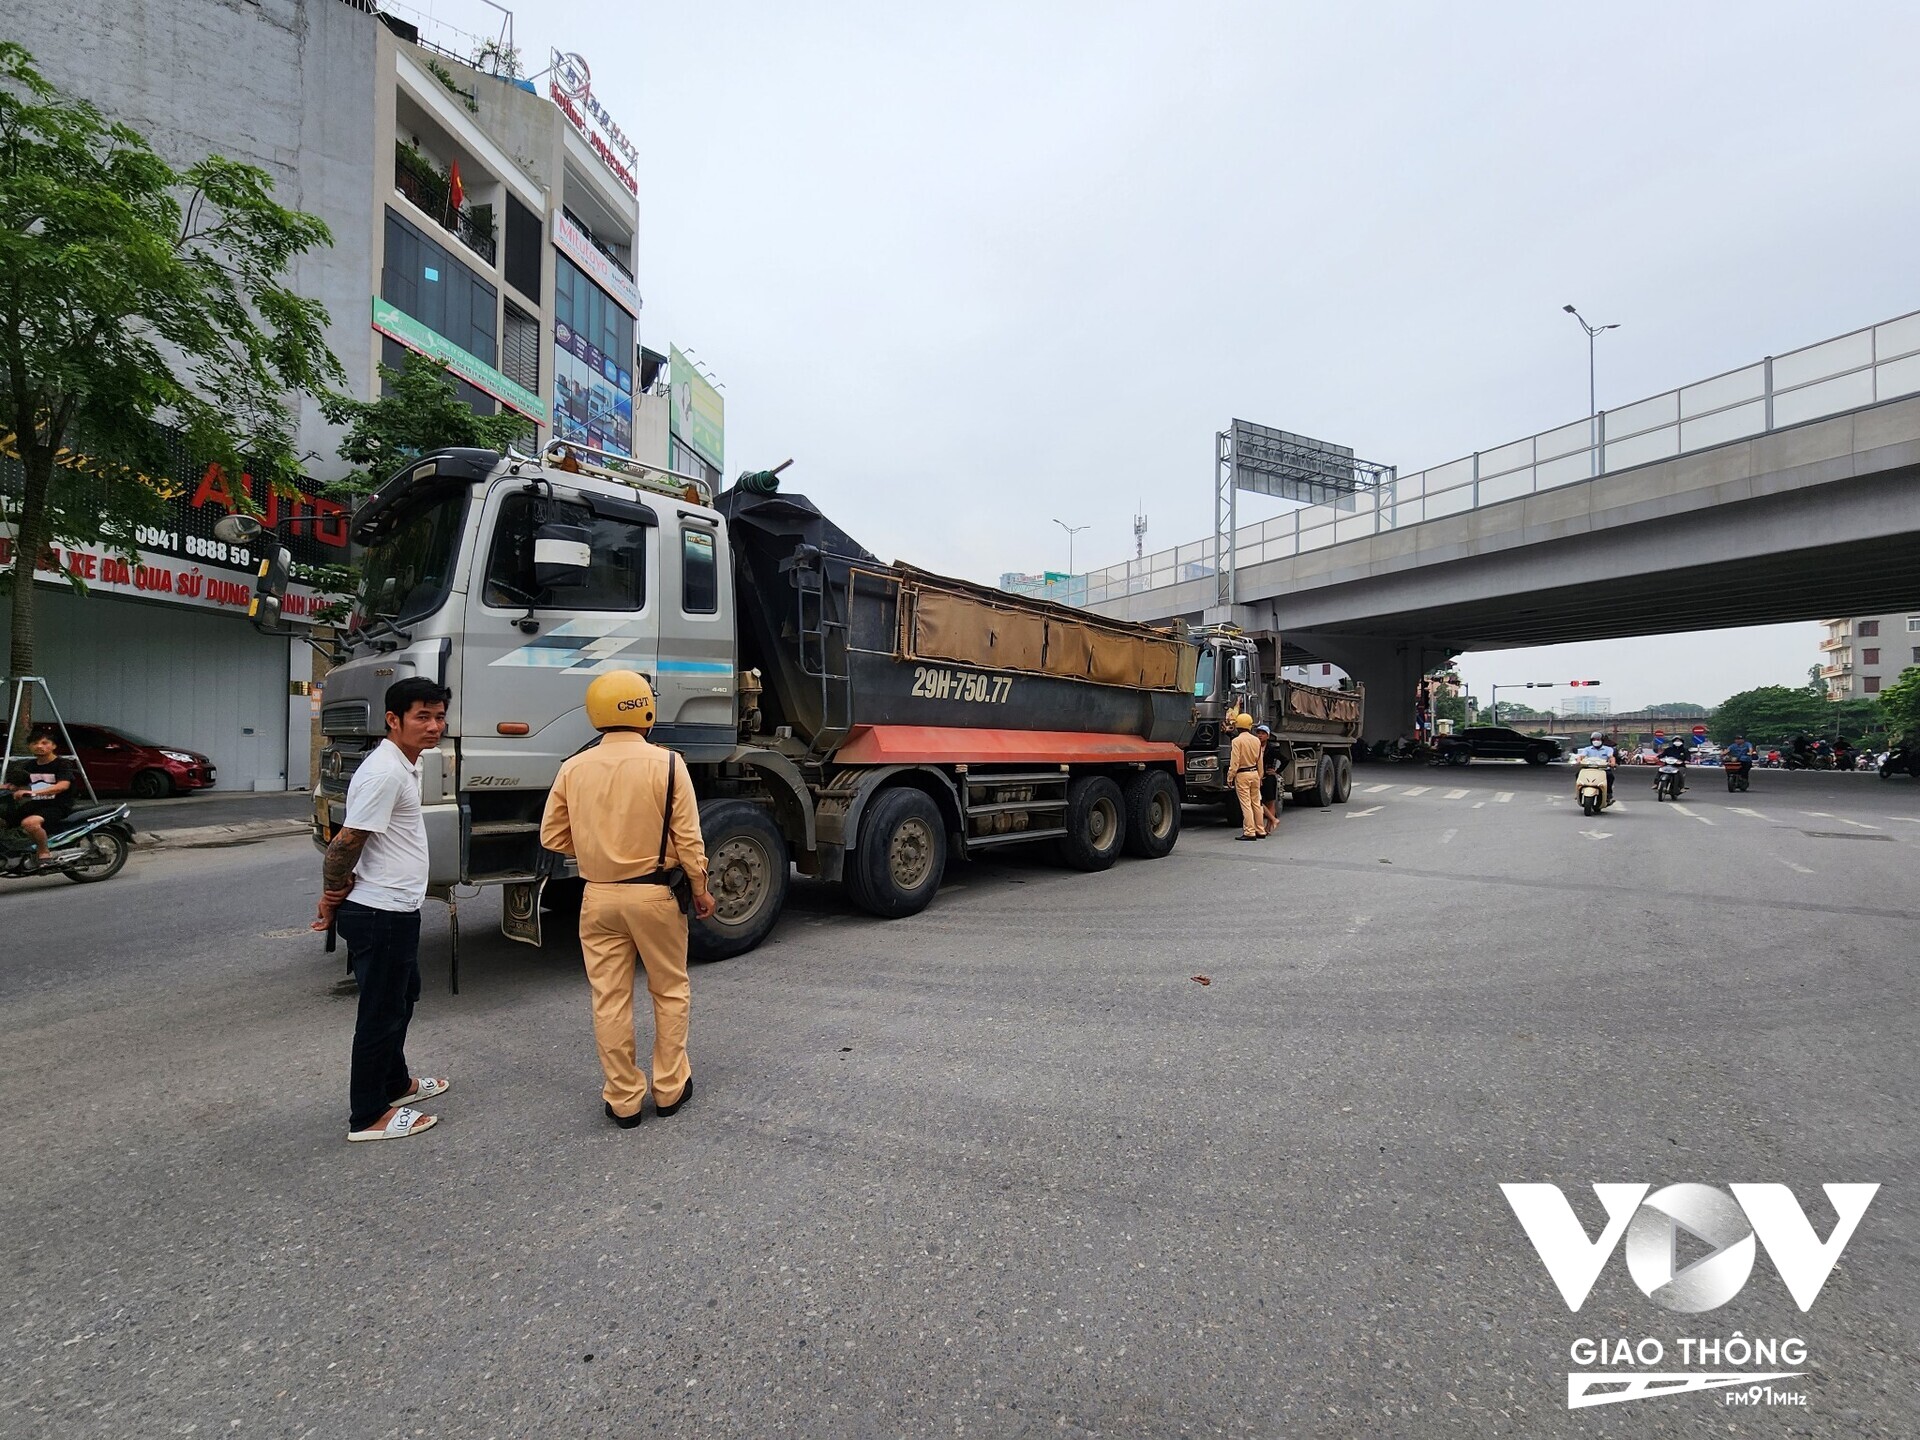 Tại nút giao Phạm Văn Đồng – Tân Xuân lúc 17h ngày 19.6 lực lượng chức năng phát hiện 2 trường hợp xe tải ben vi phạm chạy sai giờ quy định